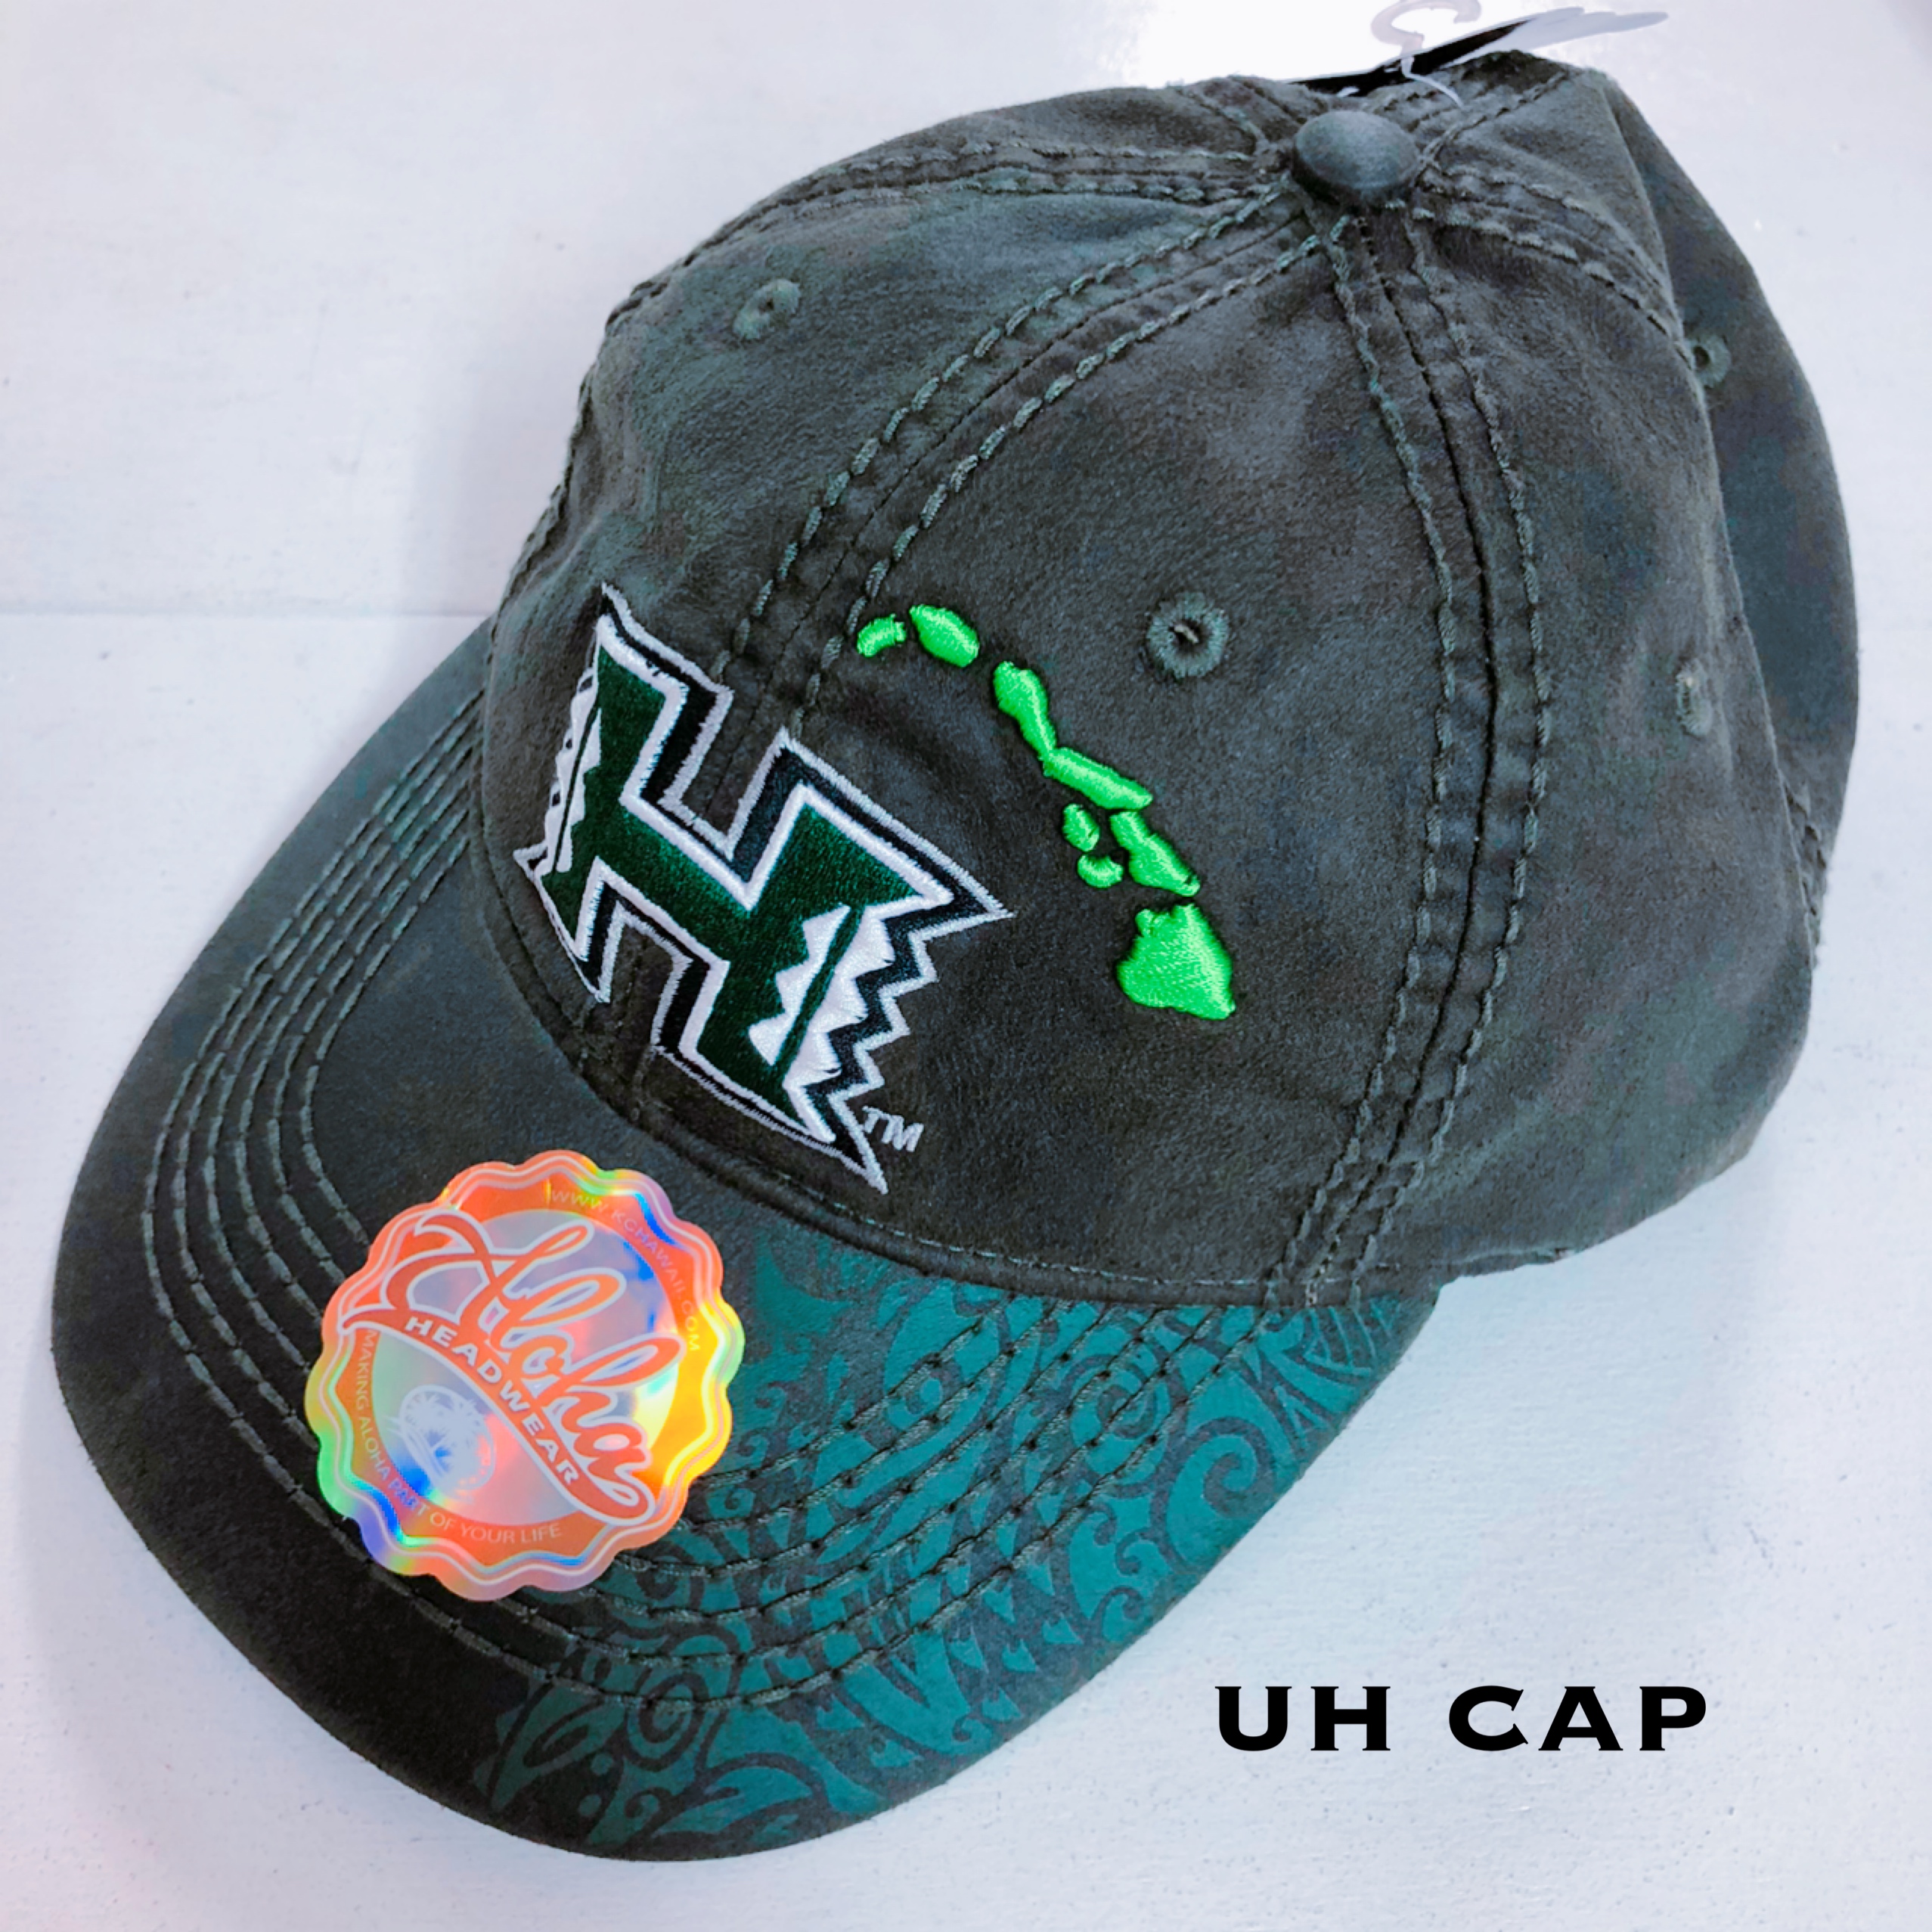 UH CAP